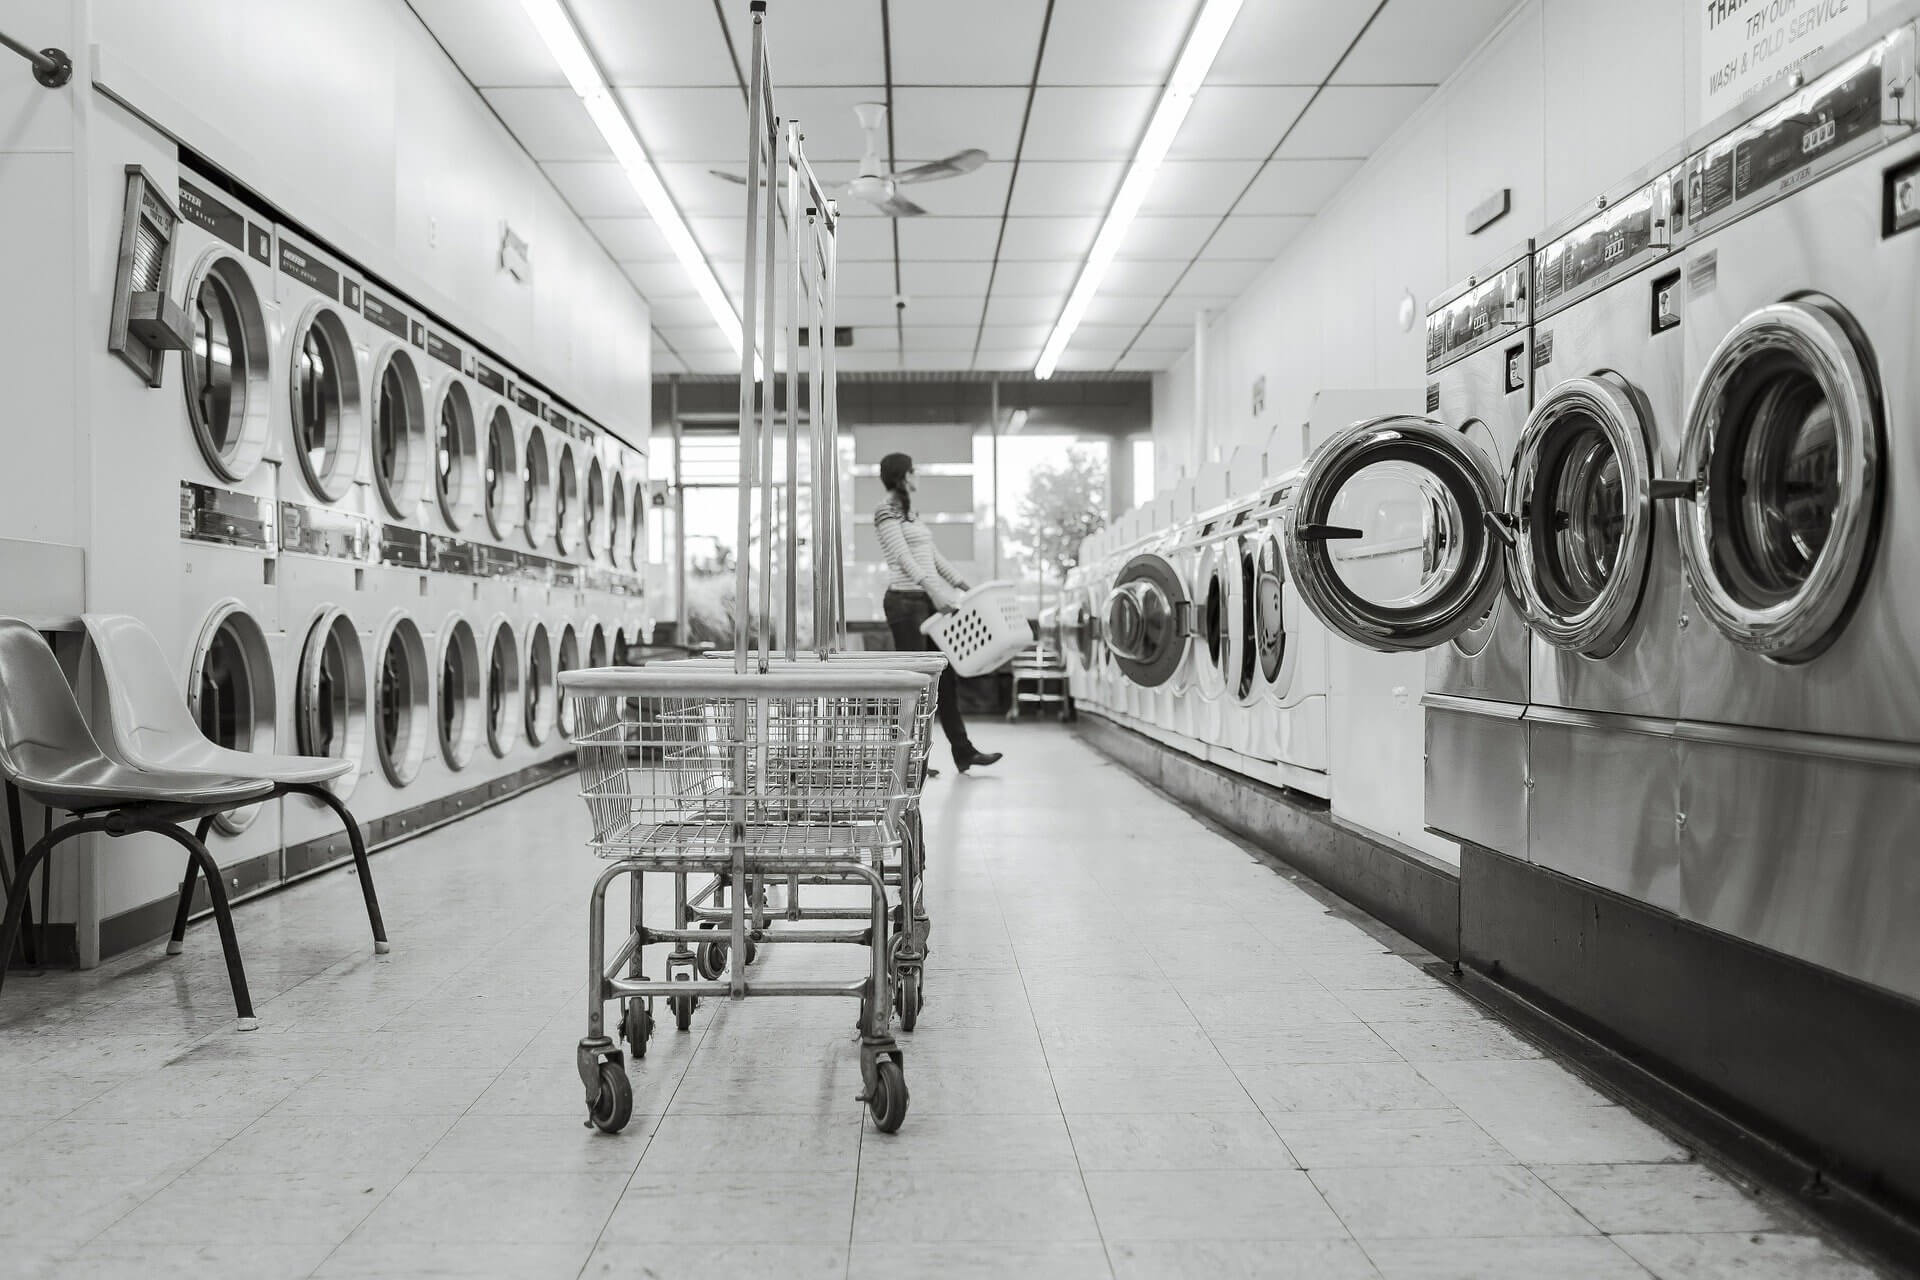 Pralnictwo przemysłowe - Koszty oraz ceny wyposażenia pralni Szczytno, zShowcase